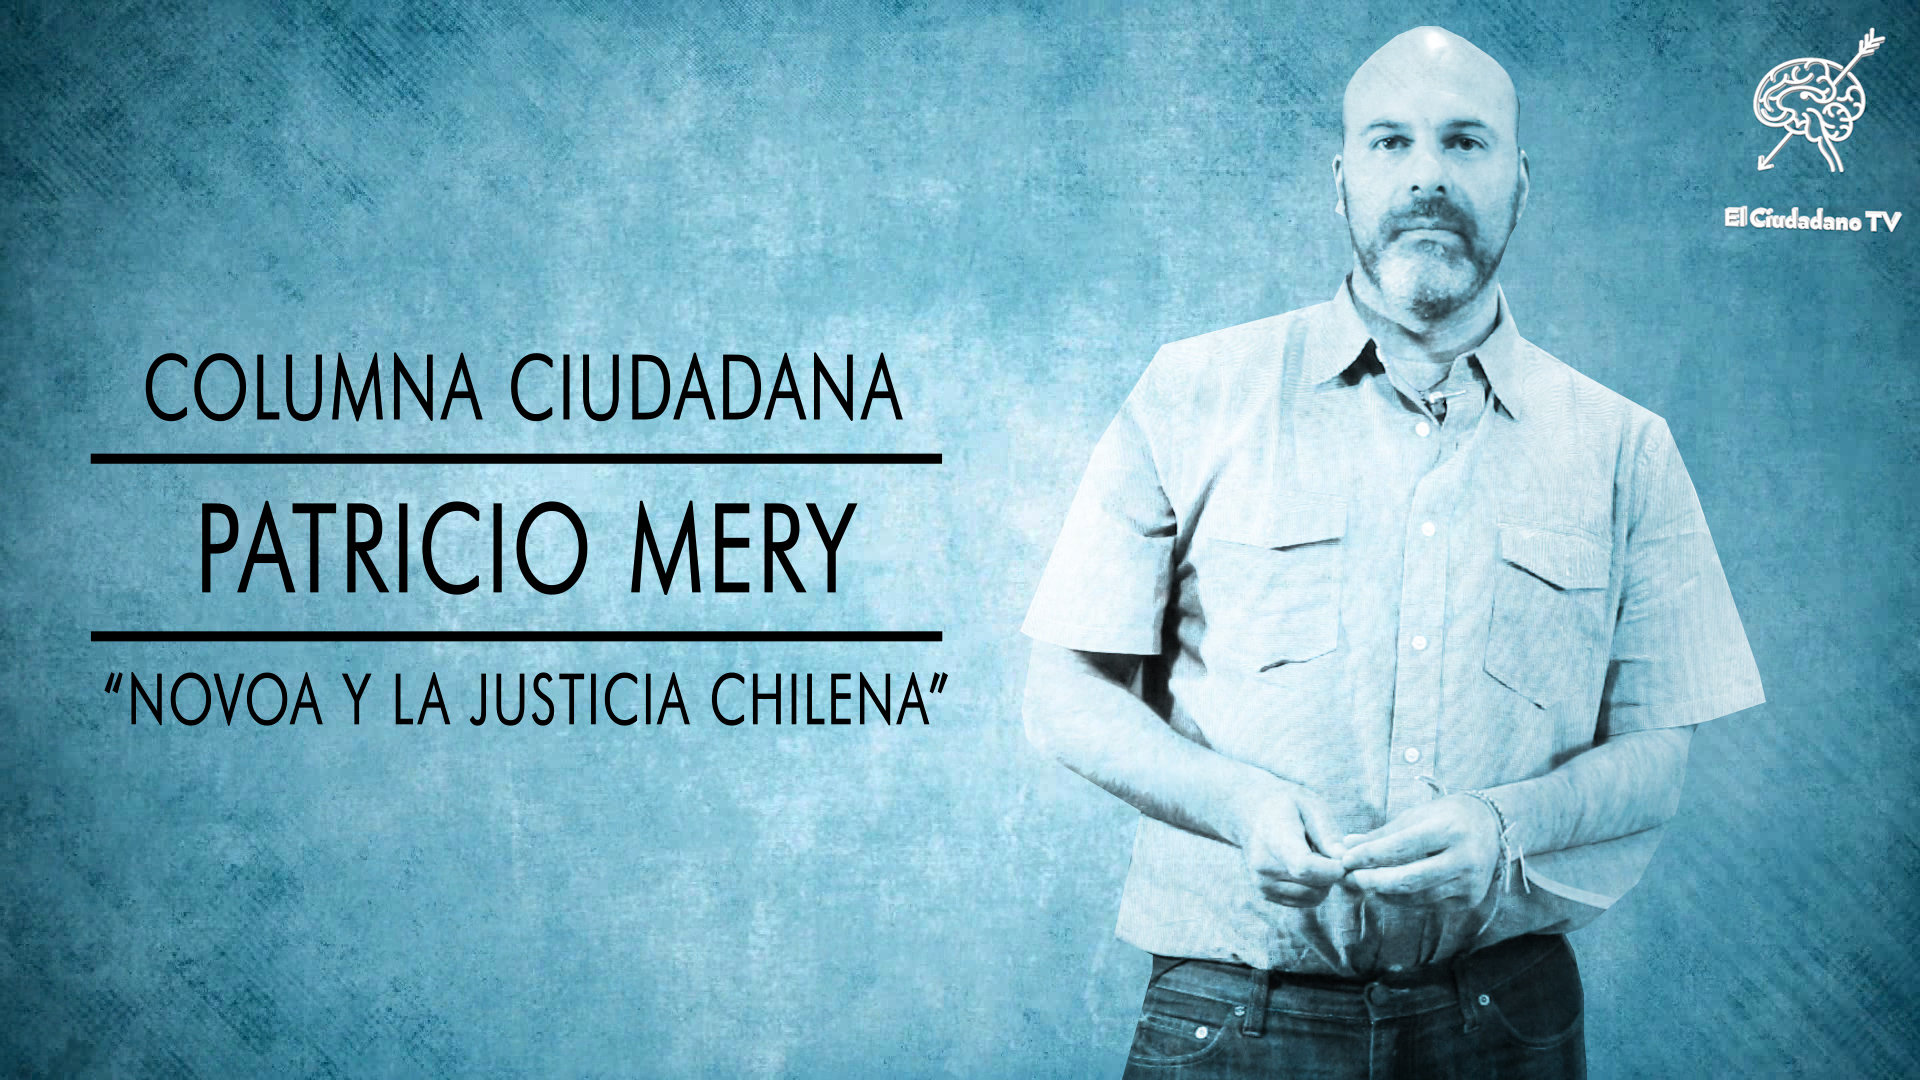 Novoa y la justicia chilena